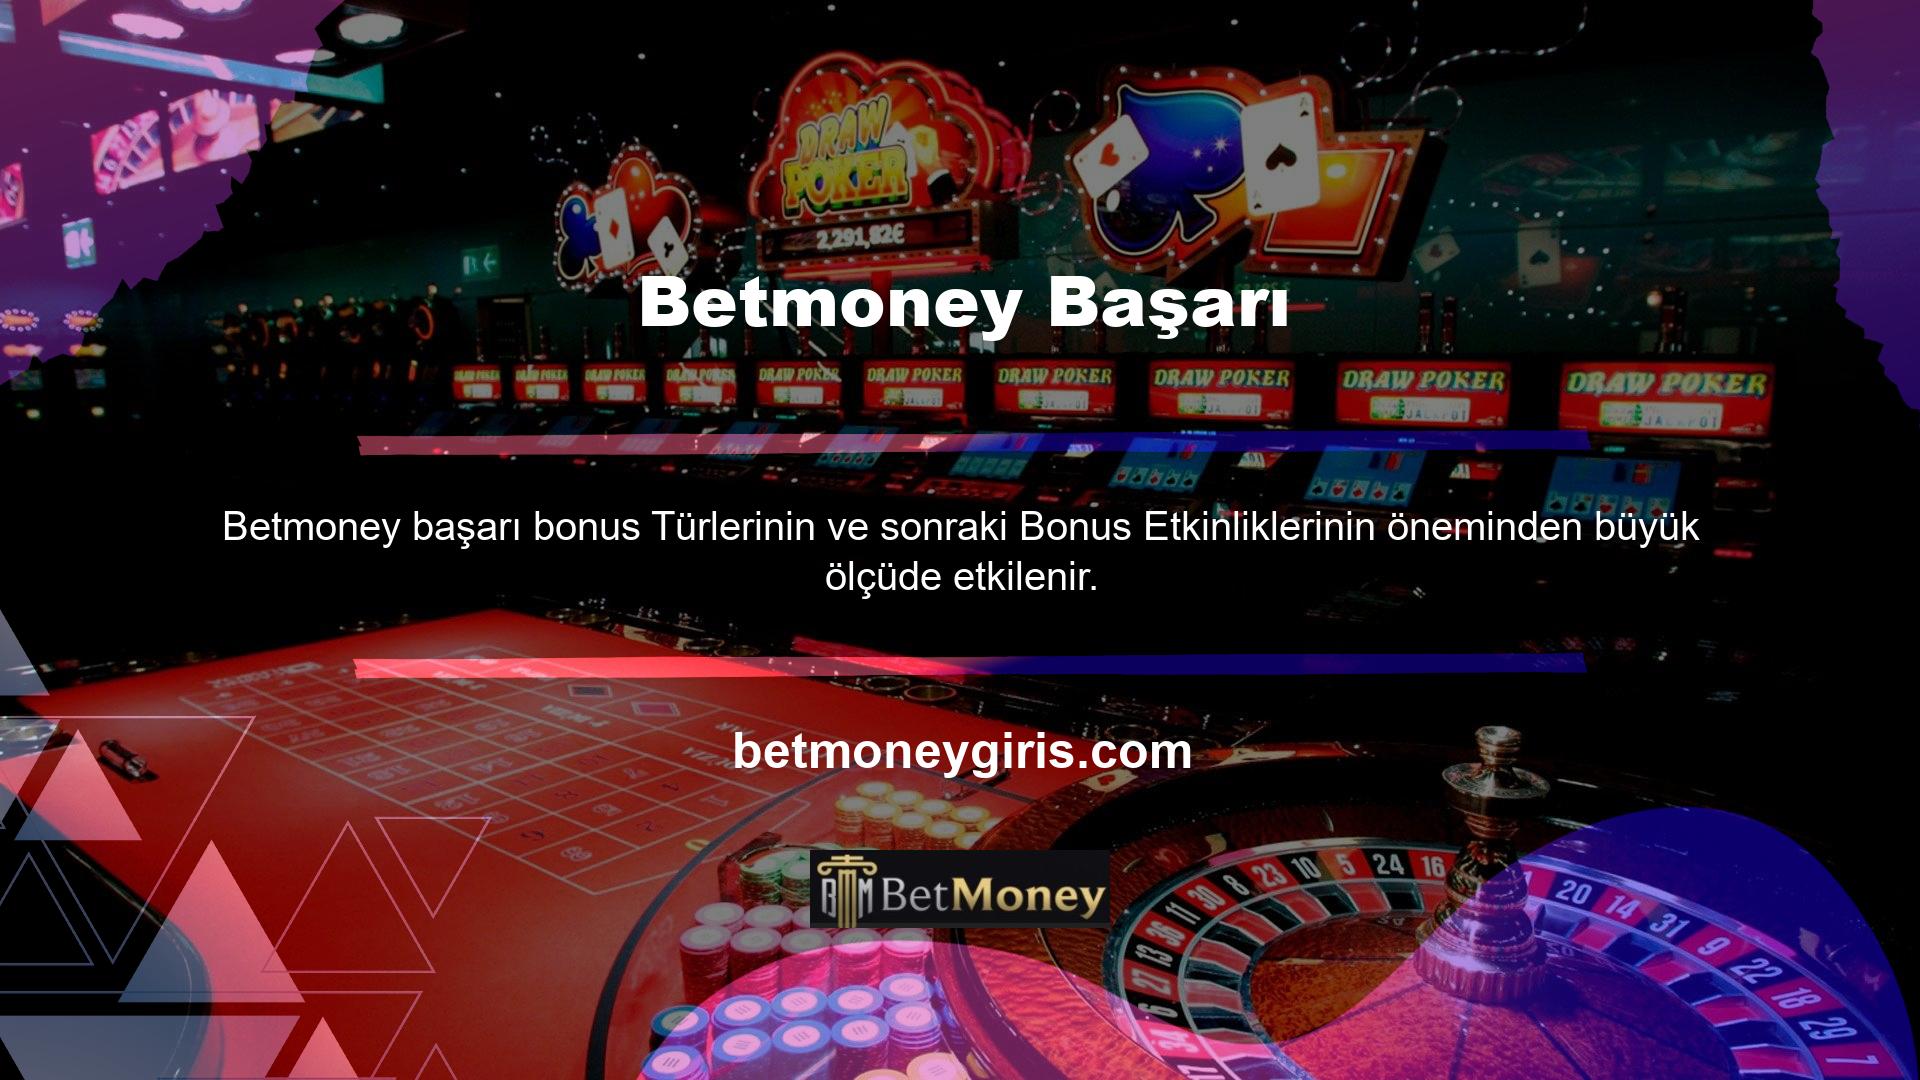 En güvenilir bonus türü sitelerden biri olan Betmoney